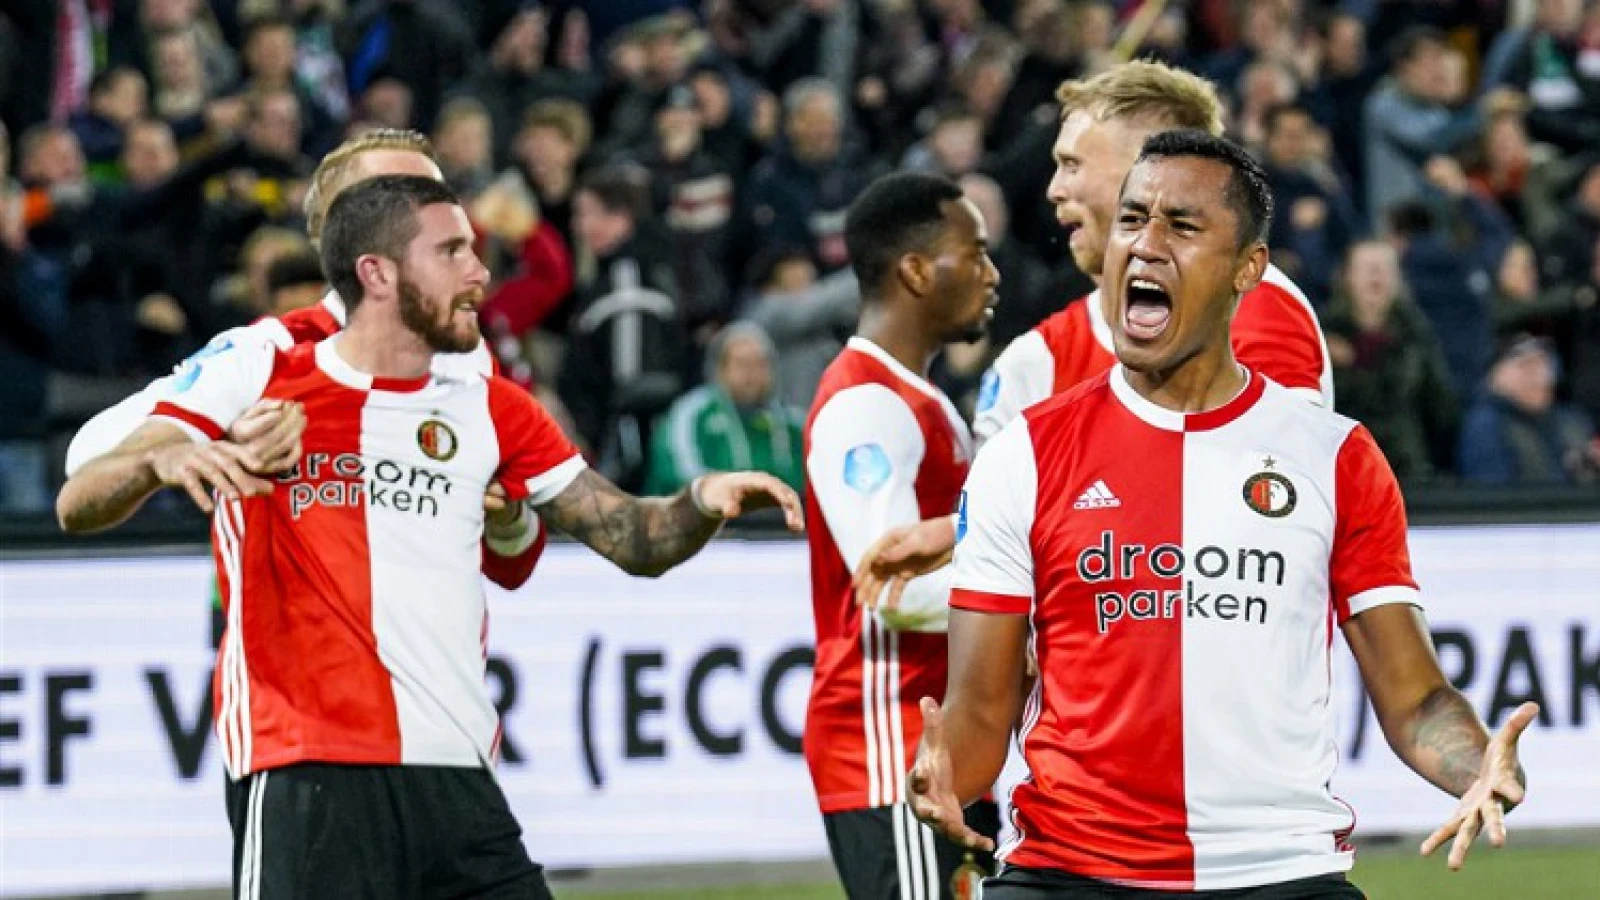 'Feyenoorder geniet interesse uit Primera Division'